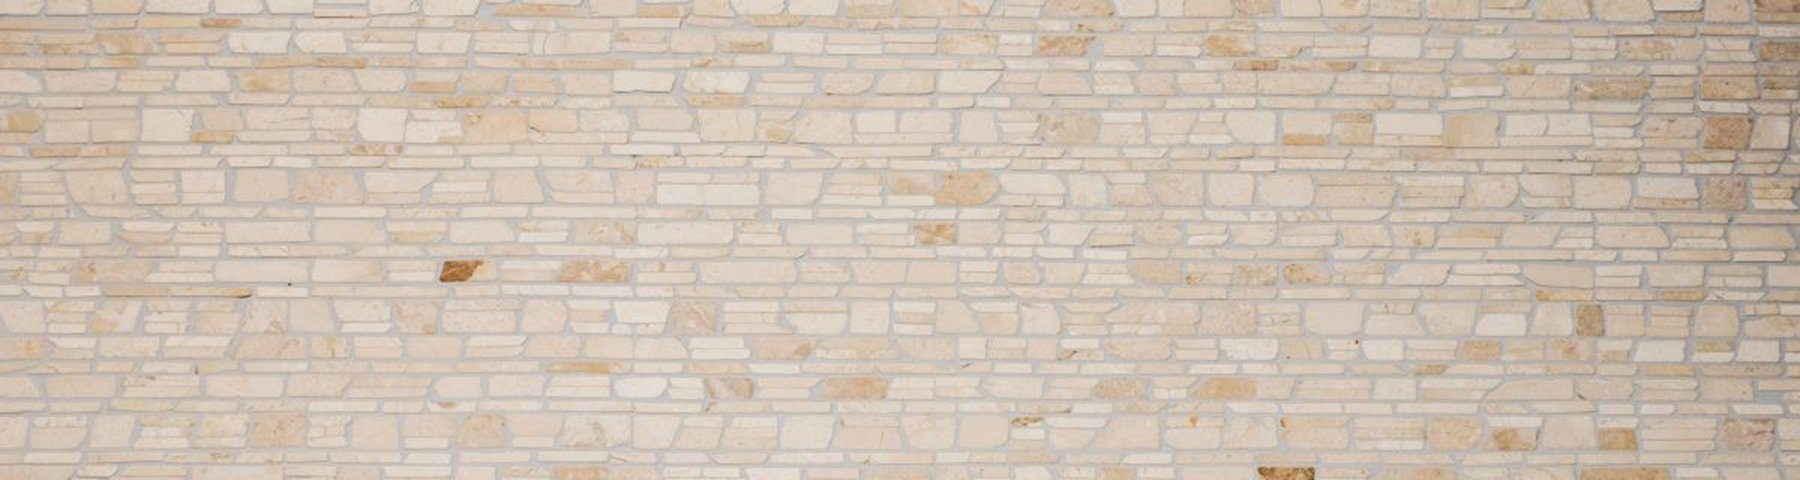 Marmor Mosani hellbeige Fliesenspiegel Bodenfliese Bad Naturstein Mosaik creme